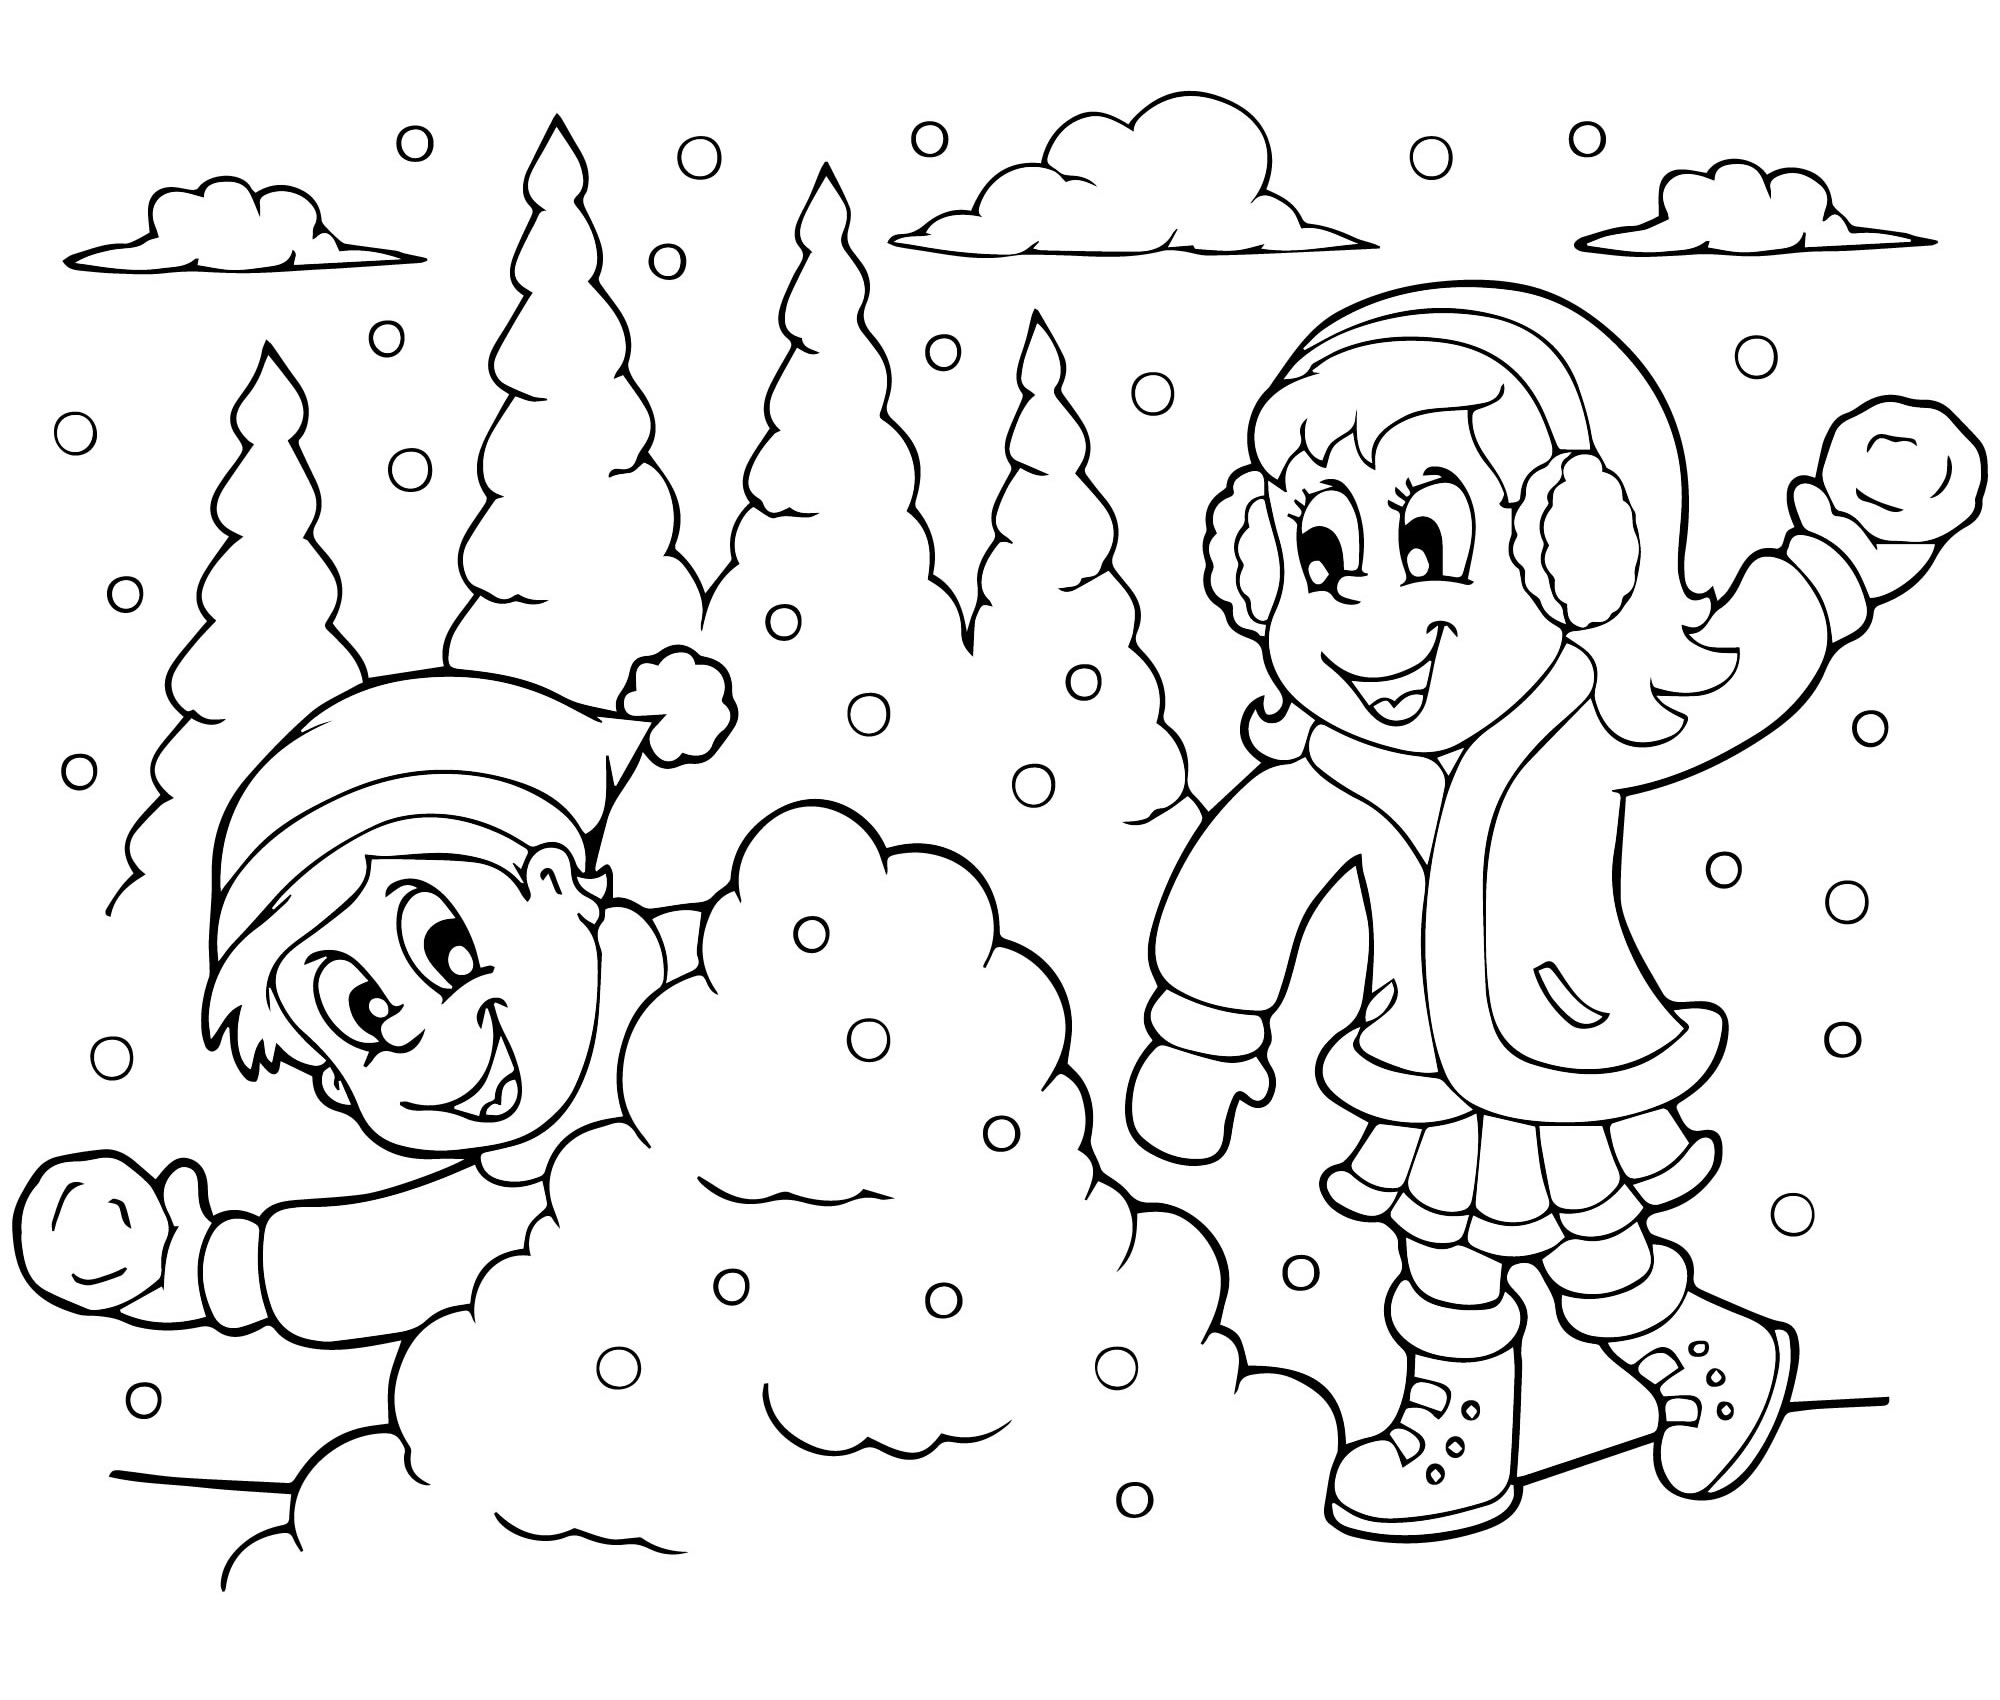 Раскраска зимние забавы детей 😻 распечатать бесплатно